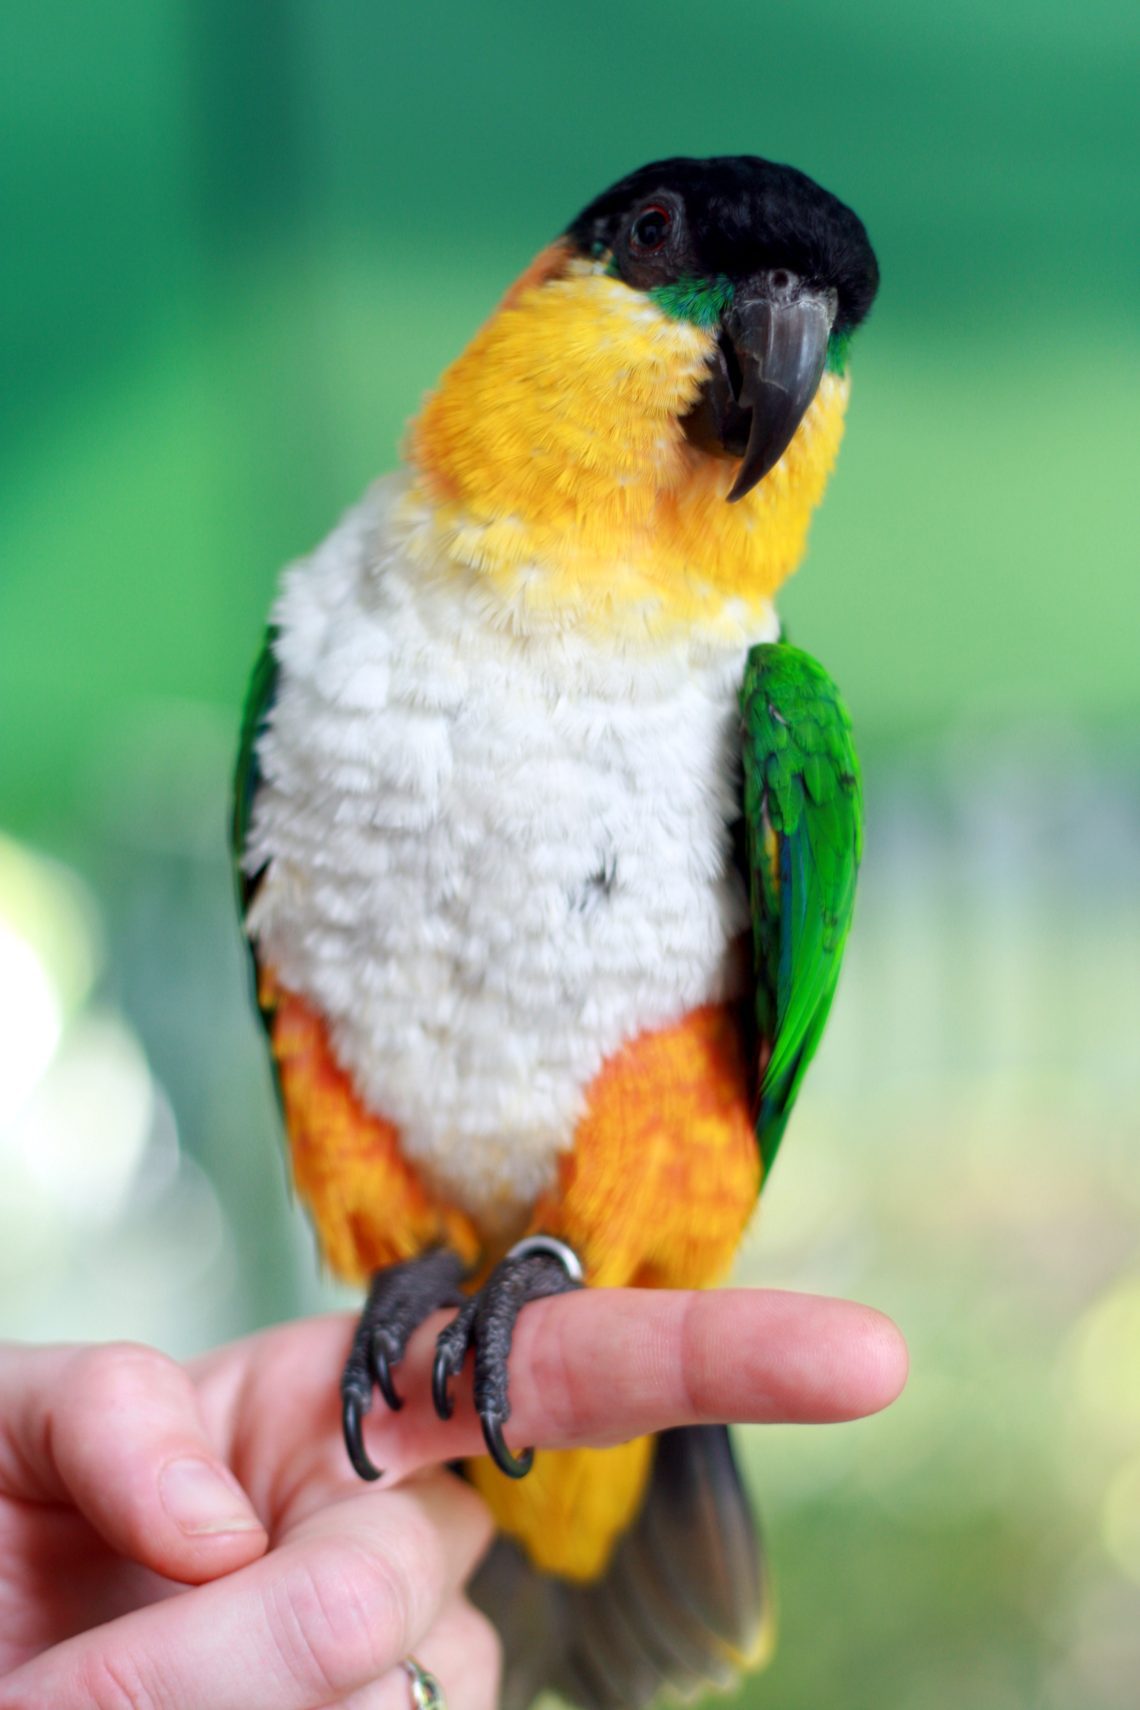 Black-headed white-bellied parrot